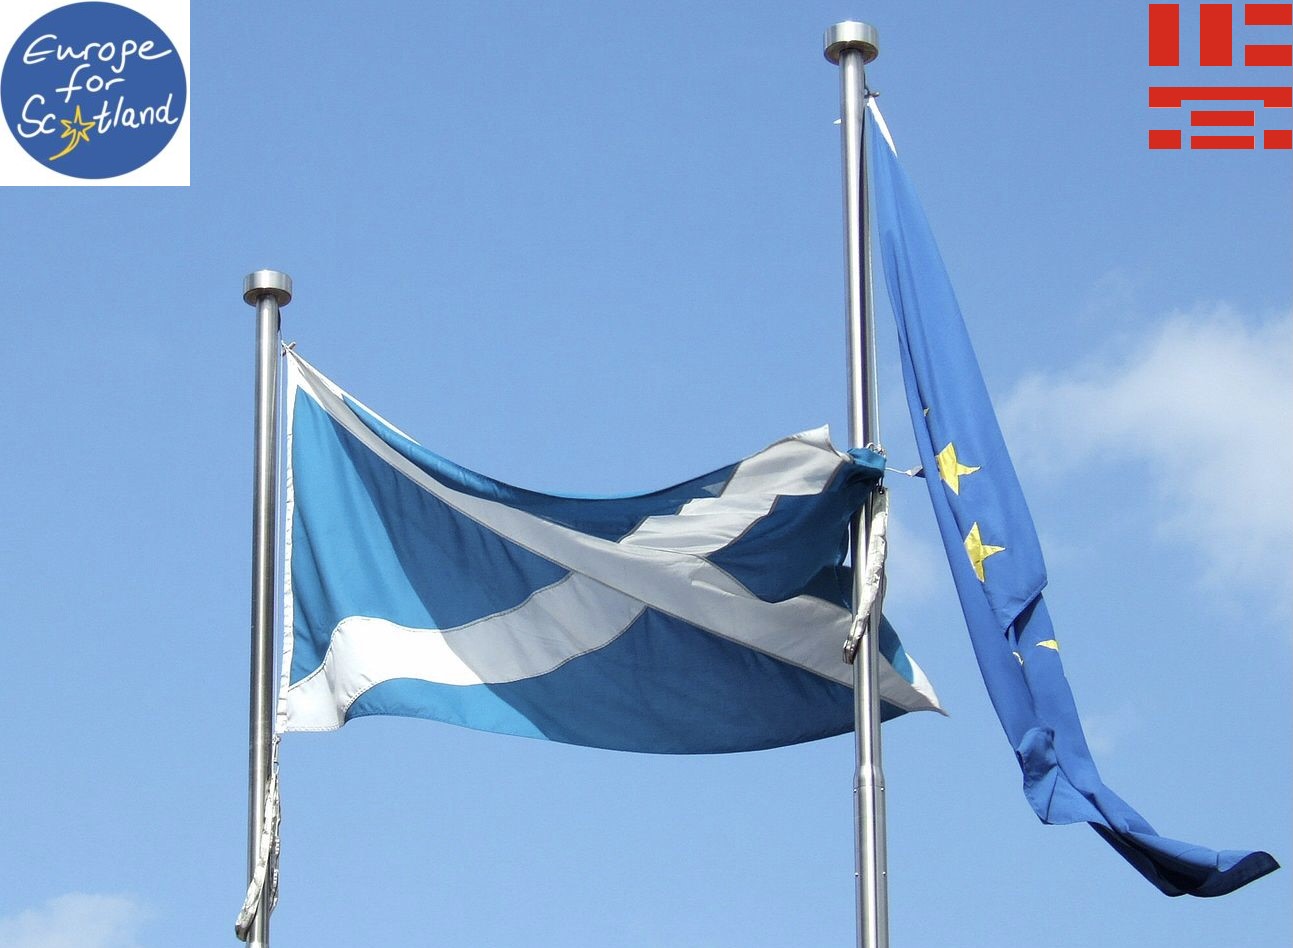 Europe for Scotland - Schottland als Teil Europas... immer noch!